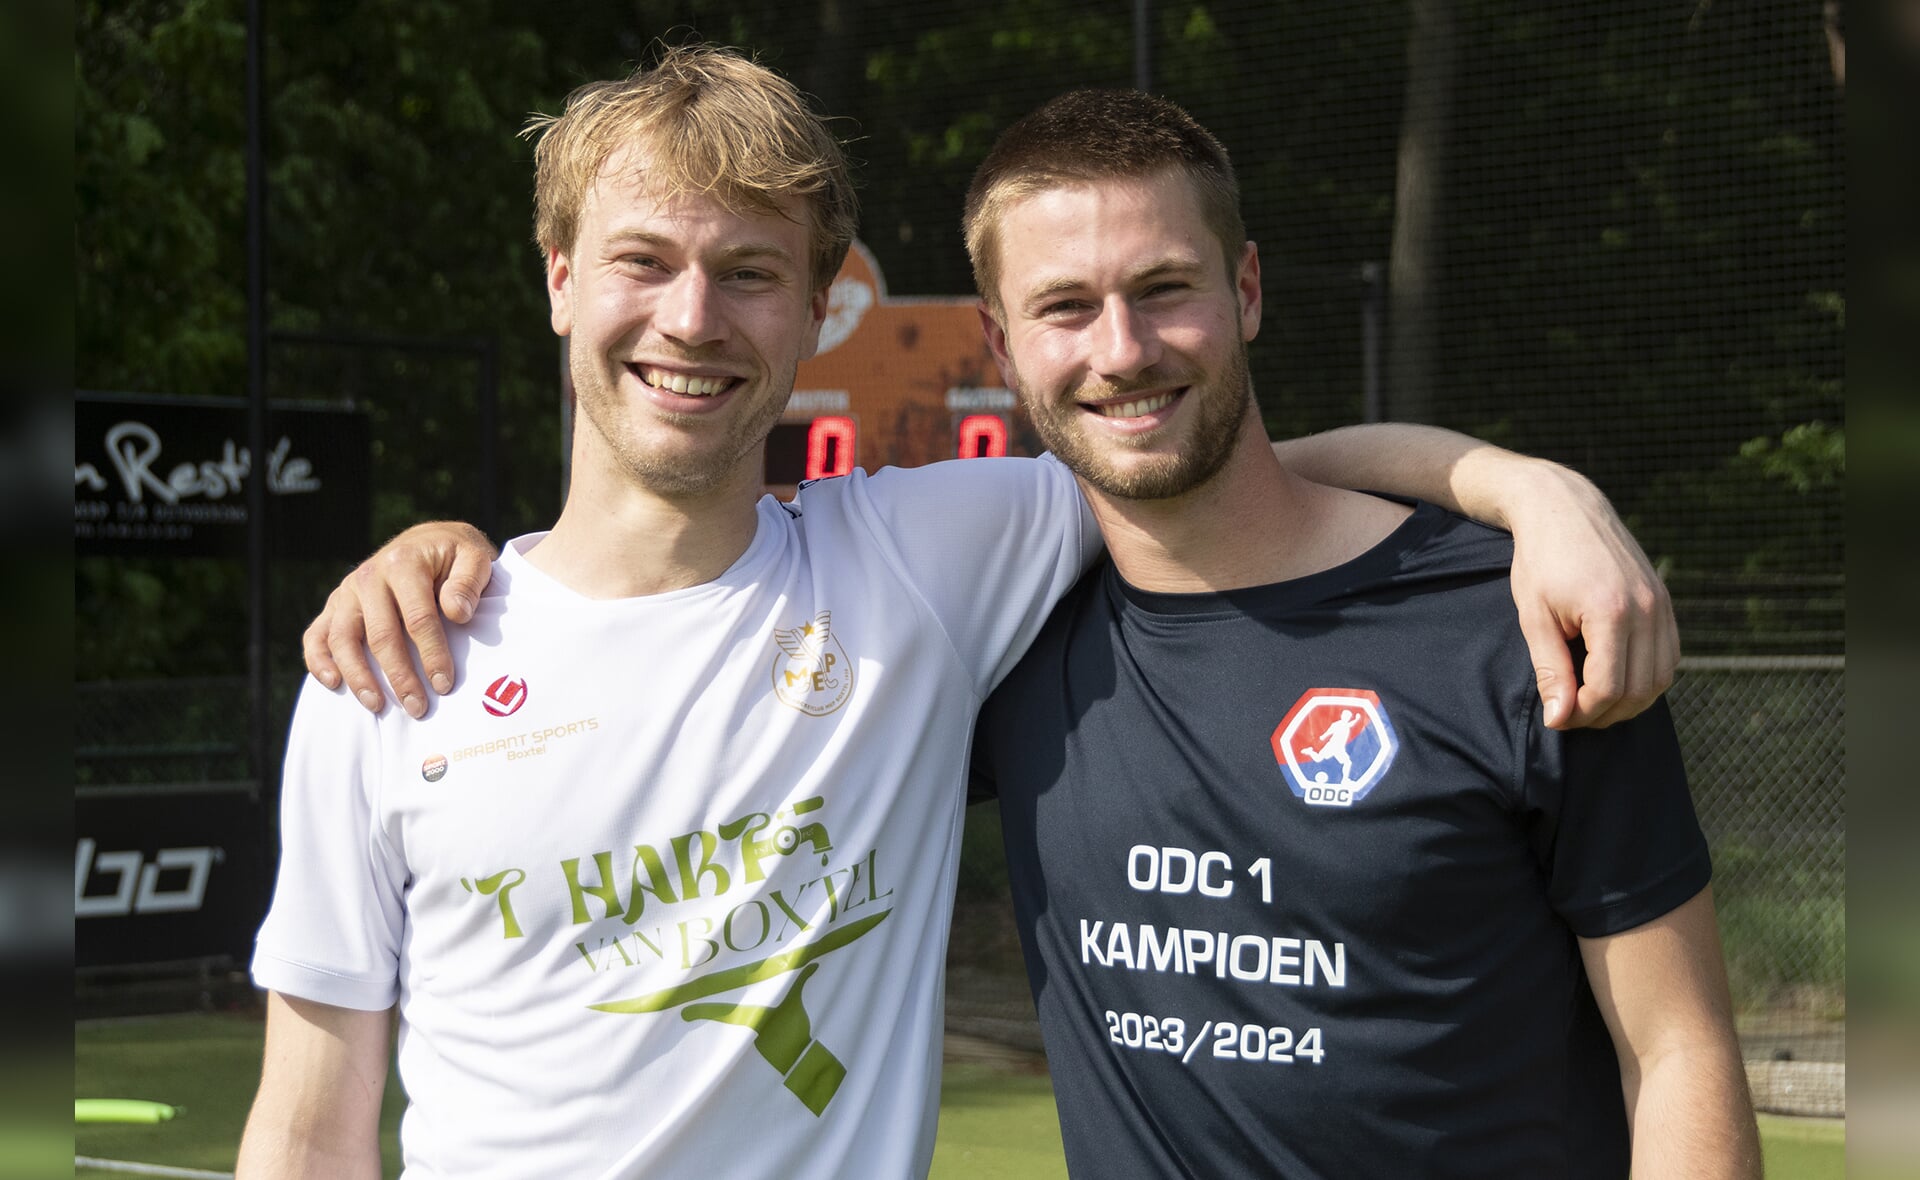 Giel en Stijn Pijnenburg, de een werd zondag kampioen met MEP, de ander twee weken eerder met het eerste elftal van voetbalclub ODC. Twee kampioenen uit een gezin dus.